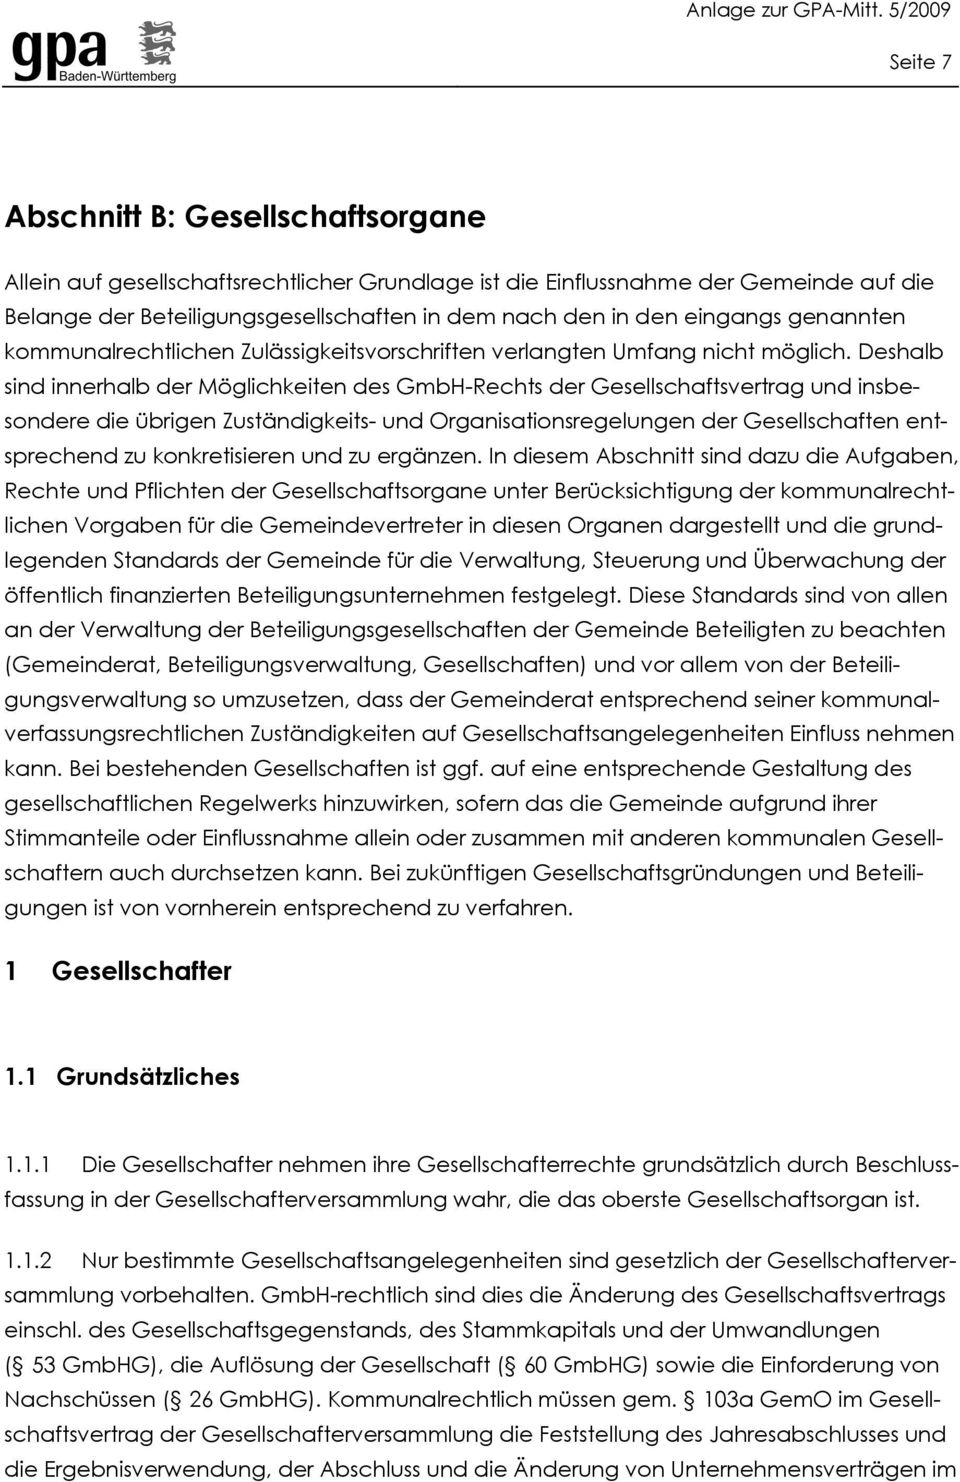 Deshalb sind innerhalb der Möglichkeiten des GmbH-Rechts der Gesellschaftsvertrag und insbesondere die übrigen Zuständigkeits- und Organisationsregelungen der Gesellschaften entsprechend zu